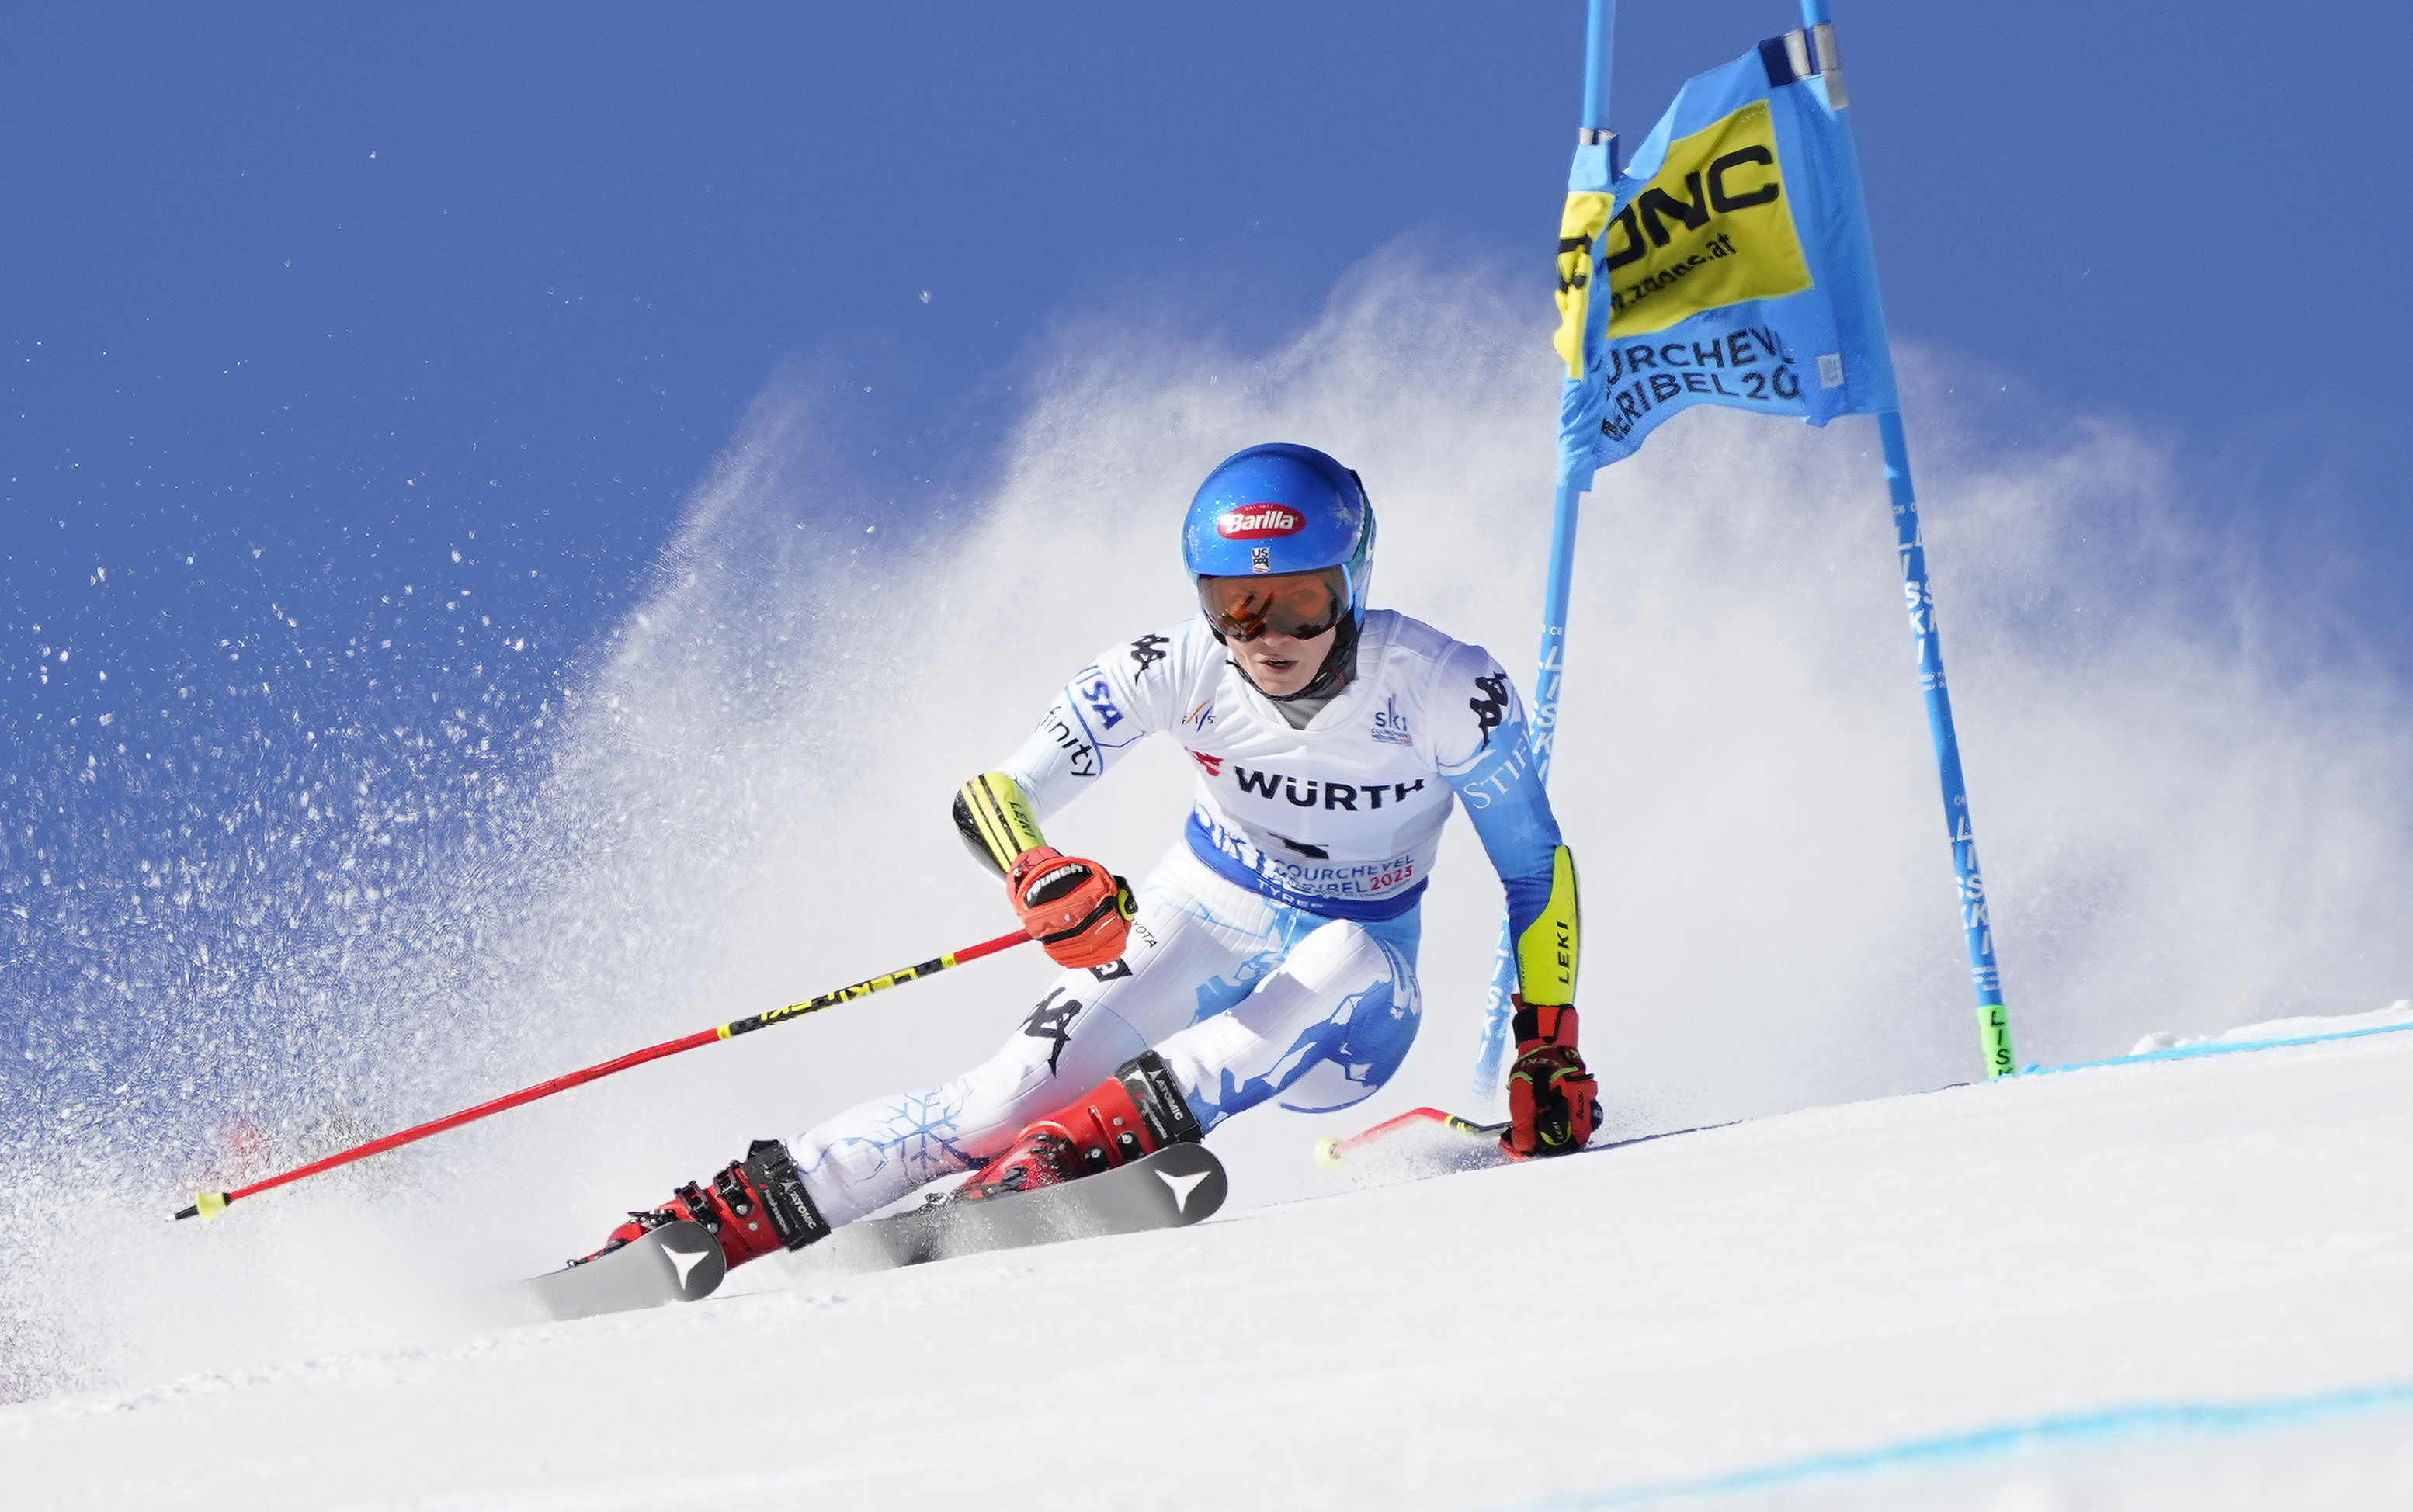 Stifel U.S. Alpine Ski Team